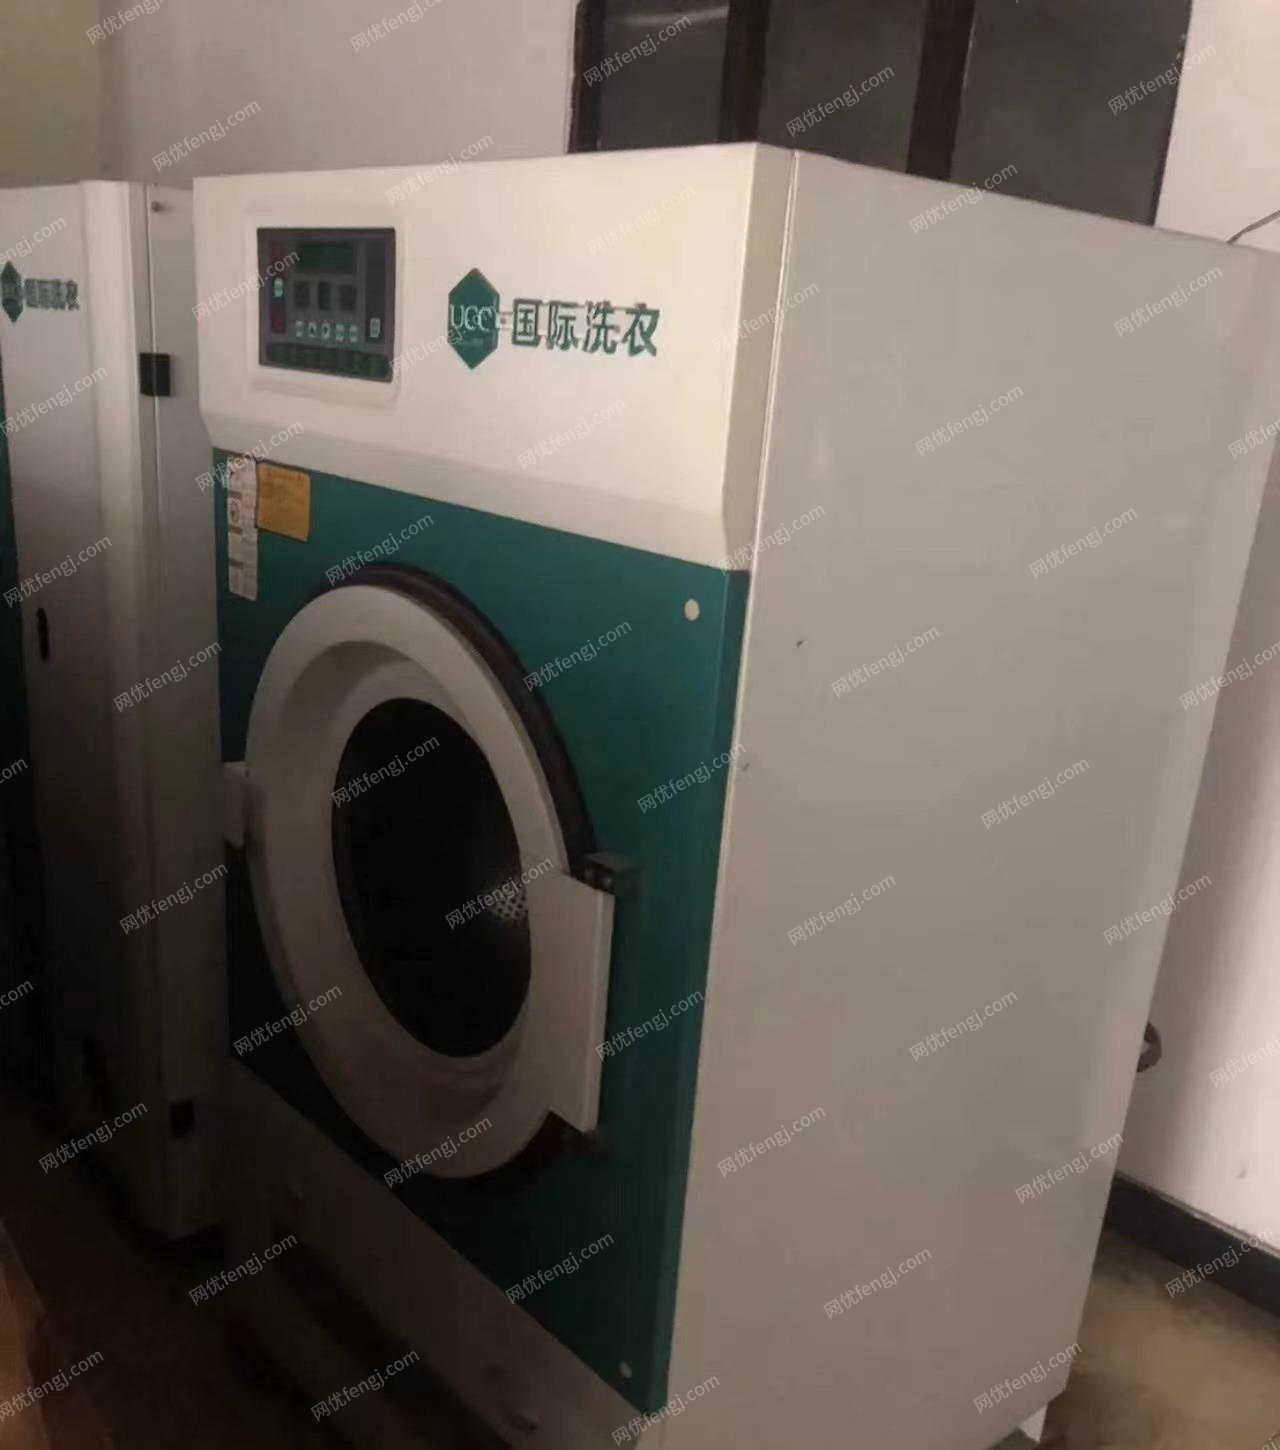 江苏常州出售干洗店设备